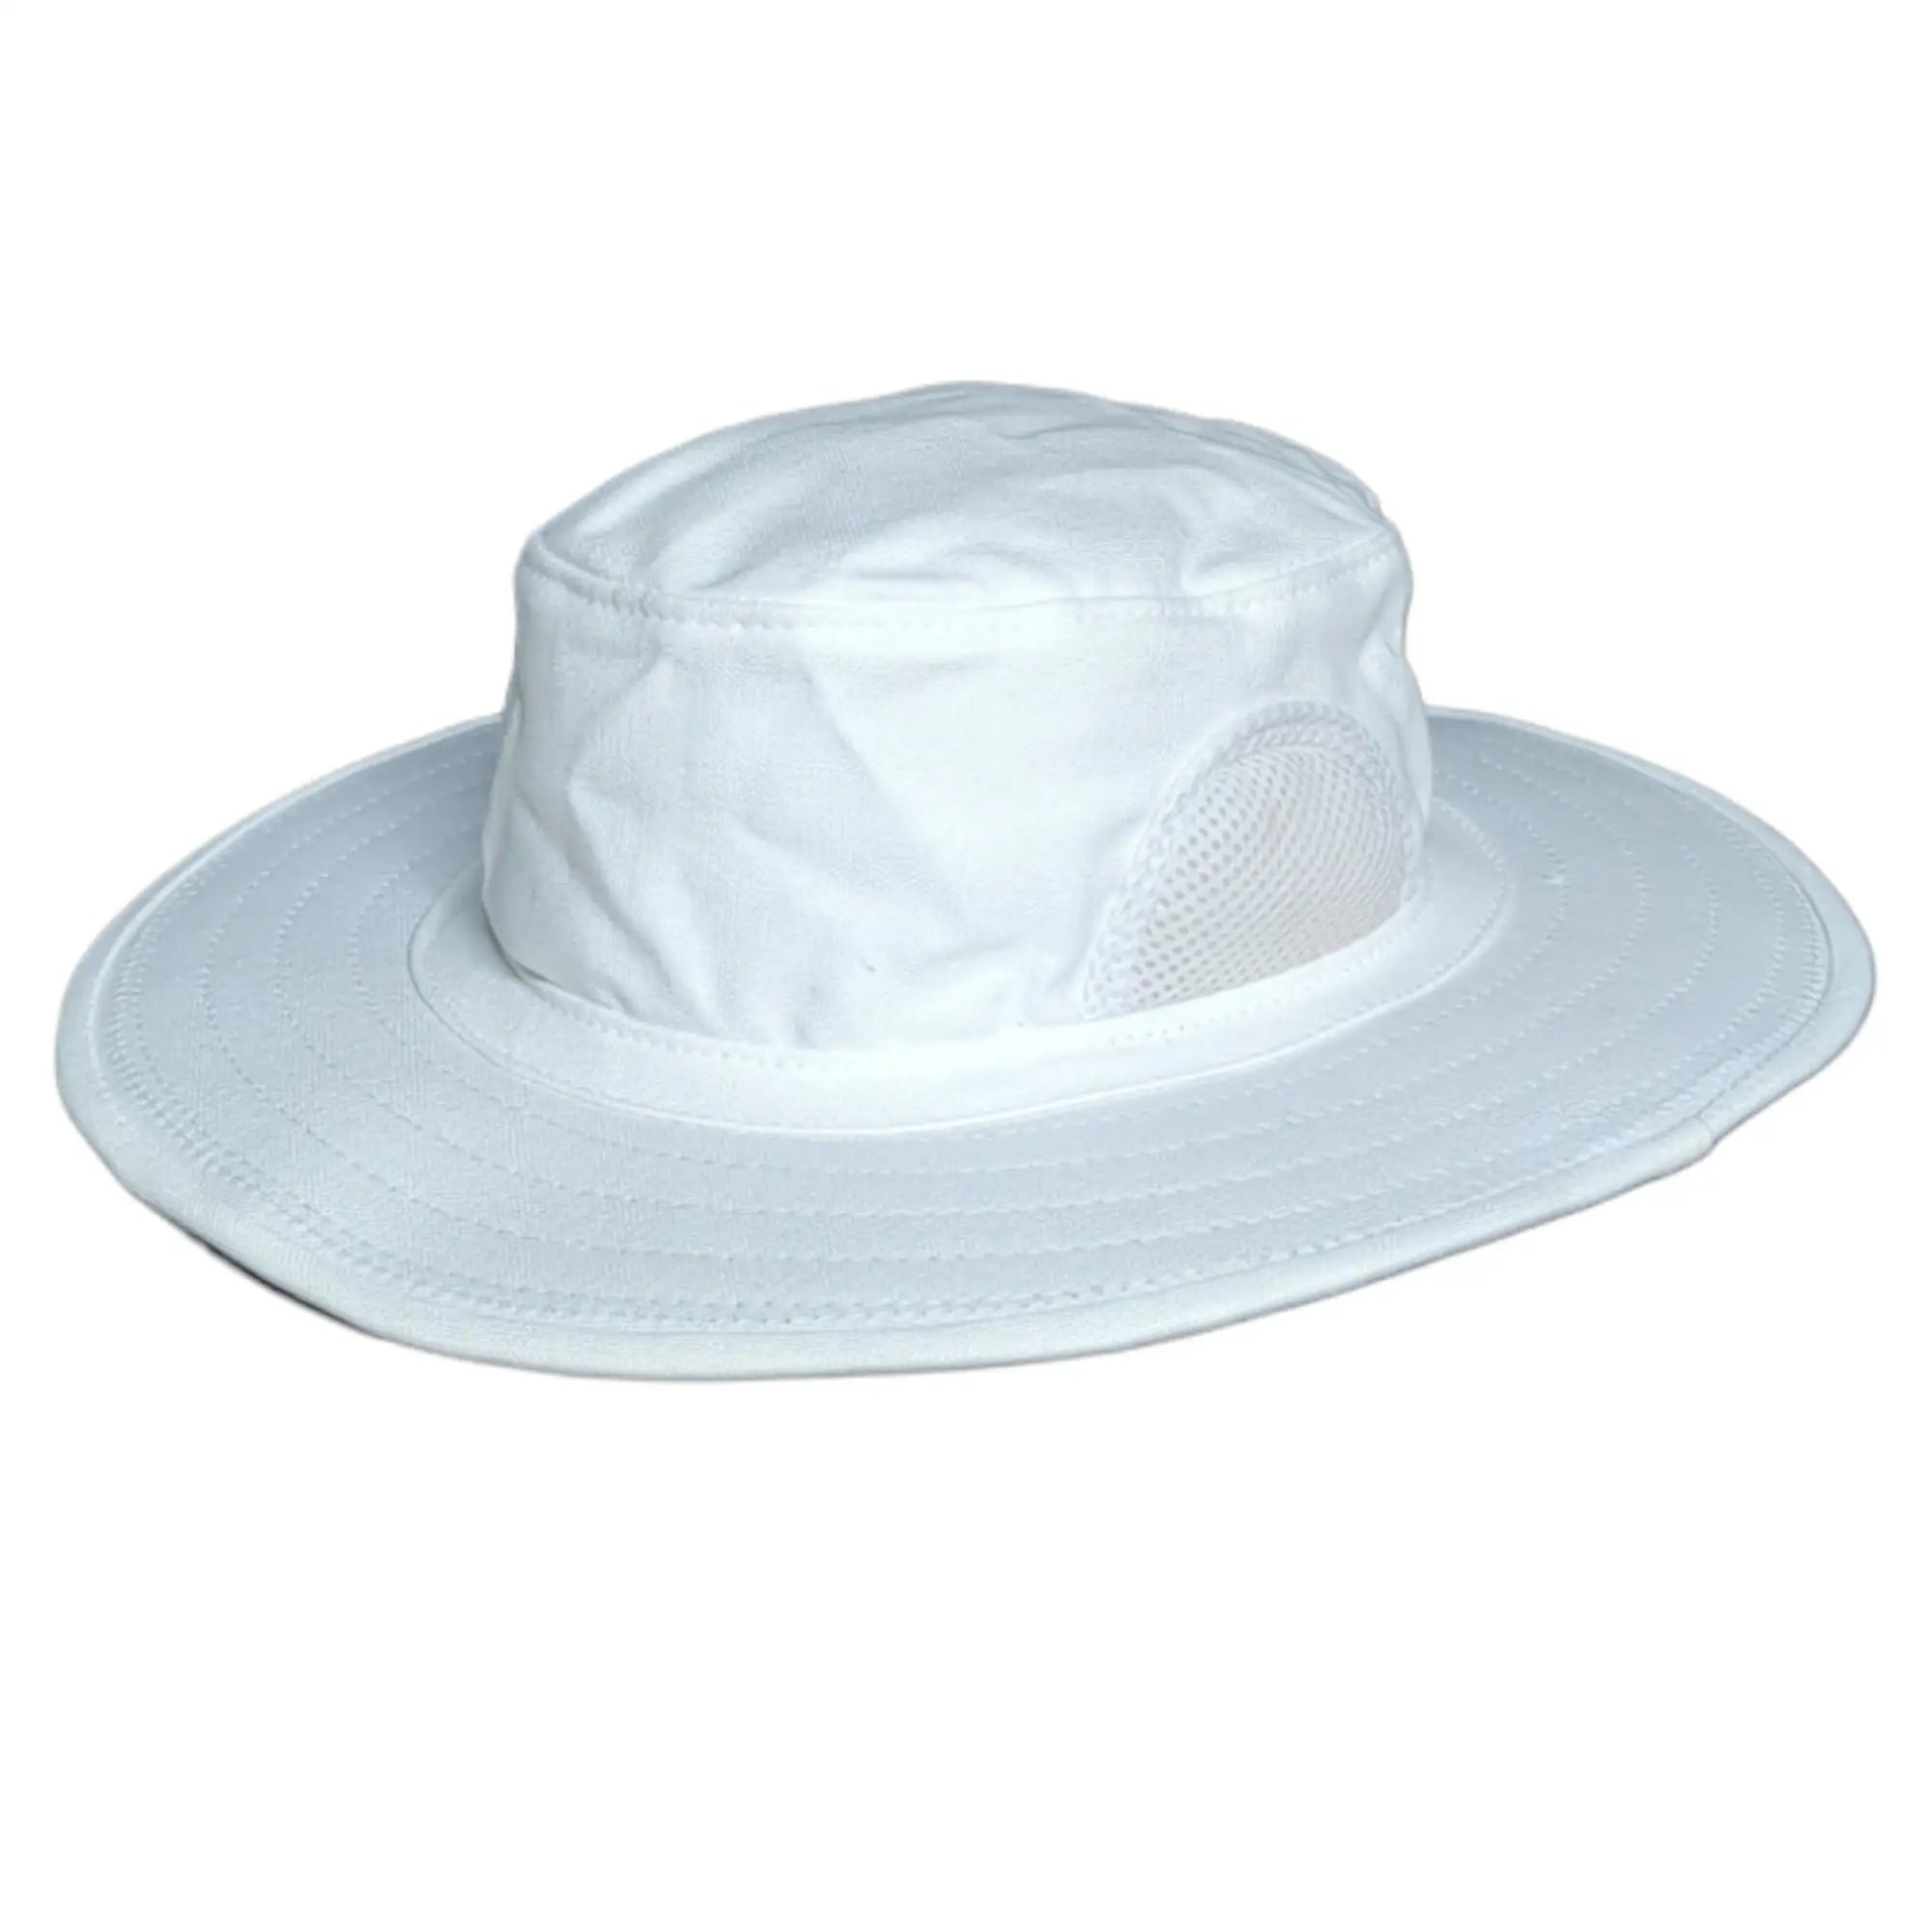 Cricket Hat and Headwear, Cricket Cap